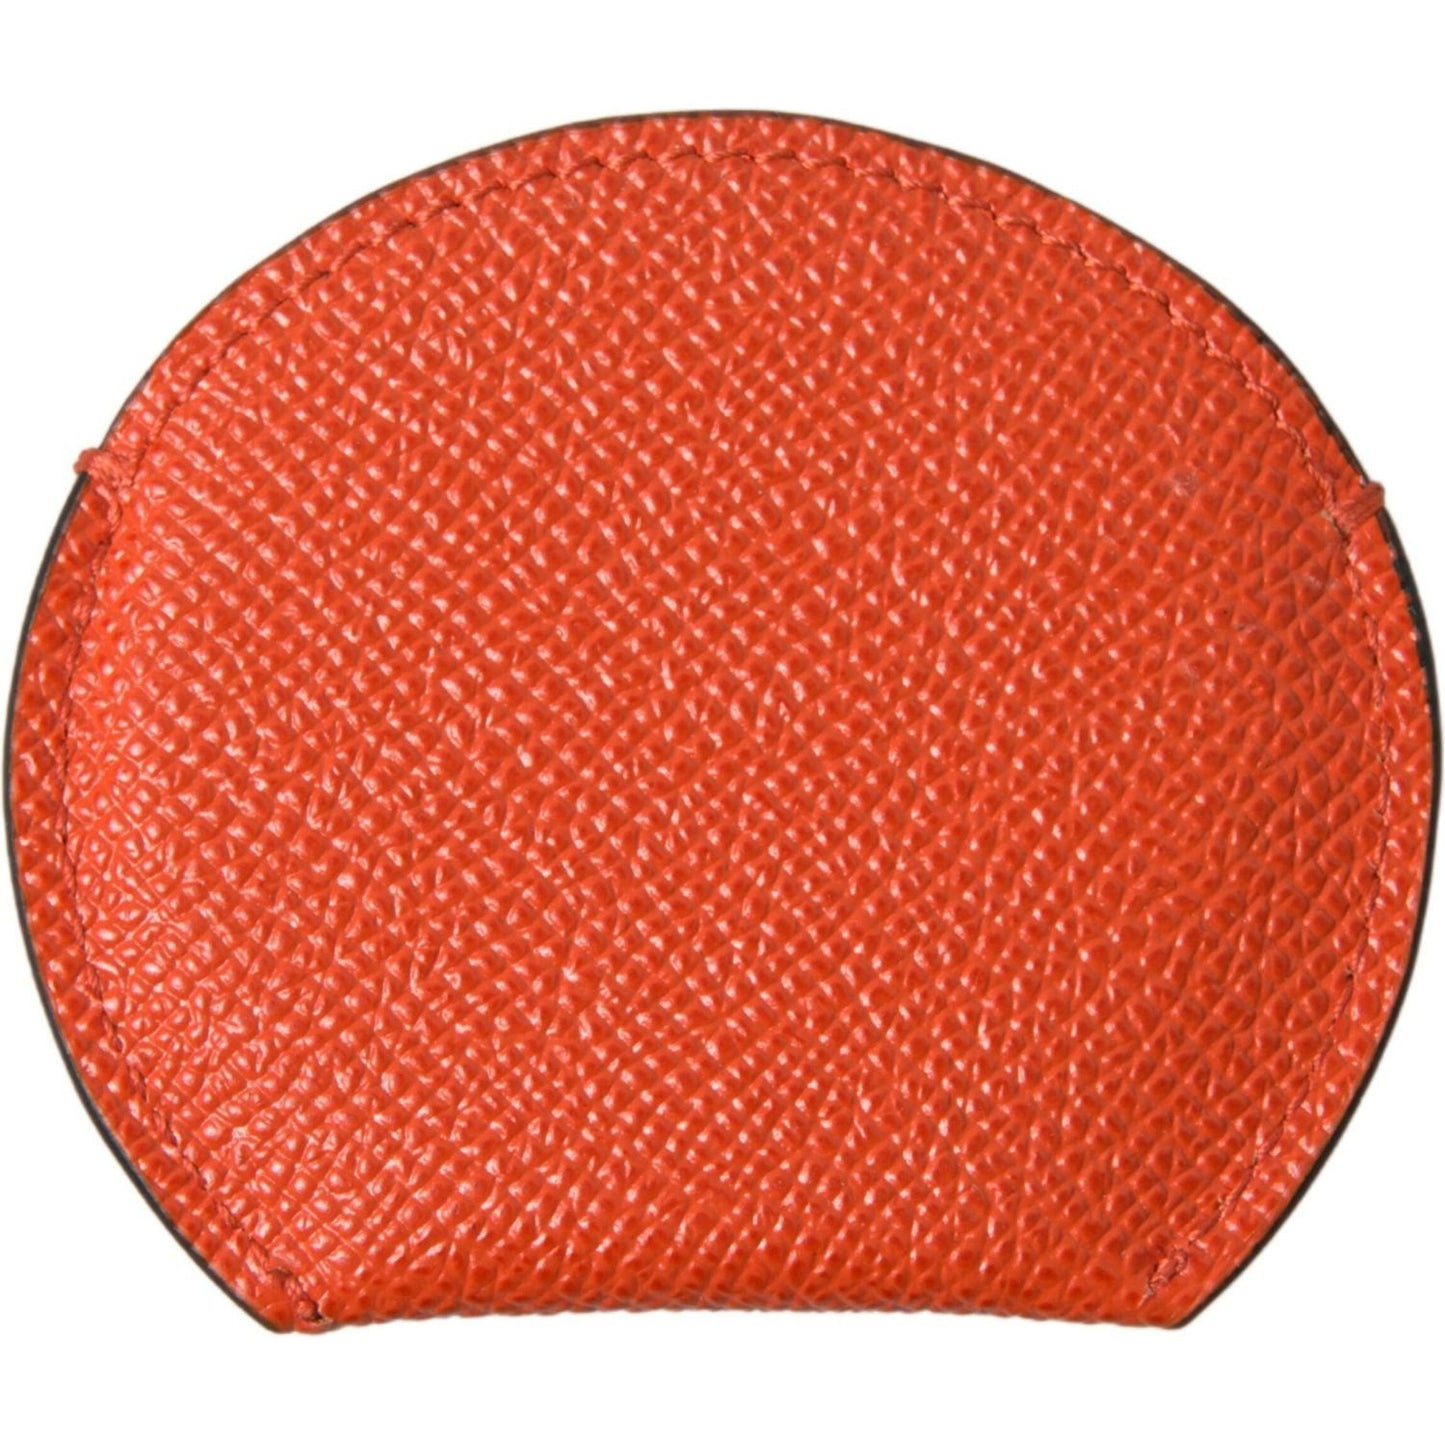 Dolce & Gabbana Elegant Orange Calfskin Mirror Holder orange-calfskin-leather-round-logo-hand-mirror-holder 465A5002-scaled-09da7705-258.jpg